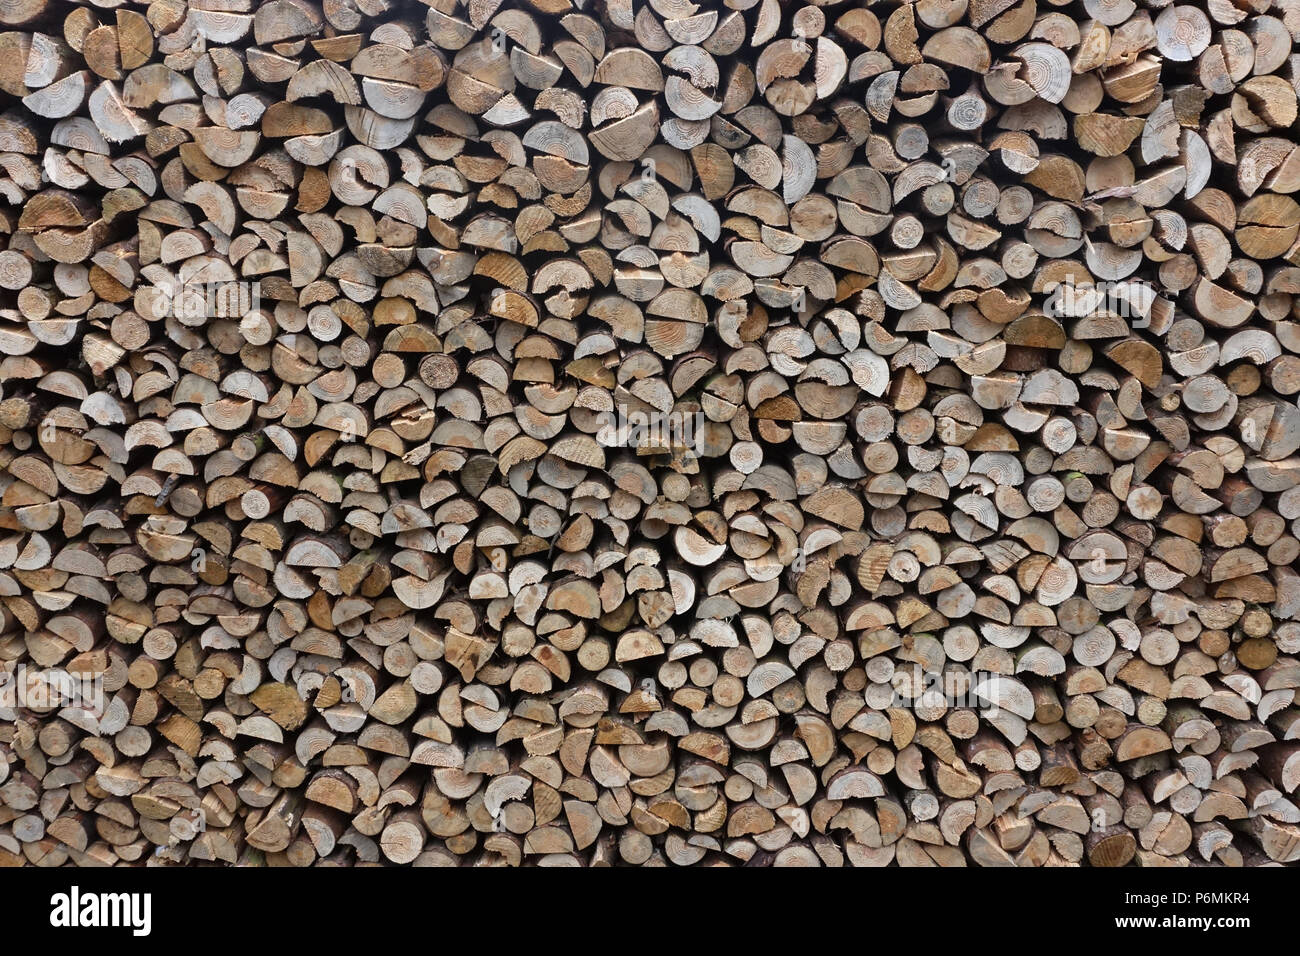 Berlin, Allemagne - pile de bois de chauffage Banque D'Images